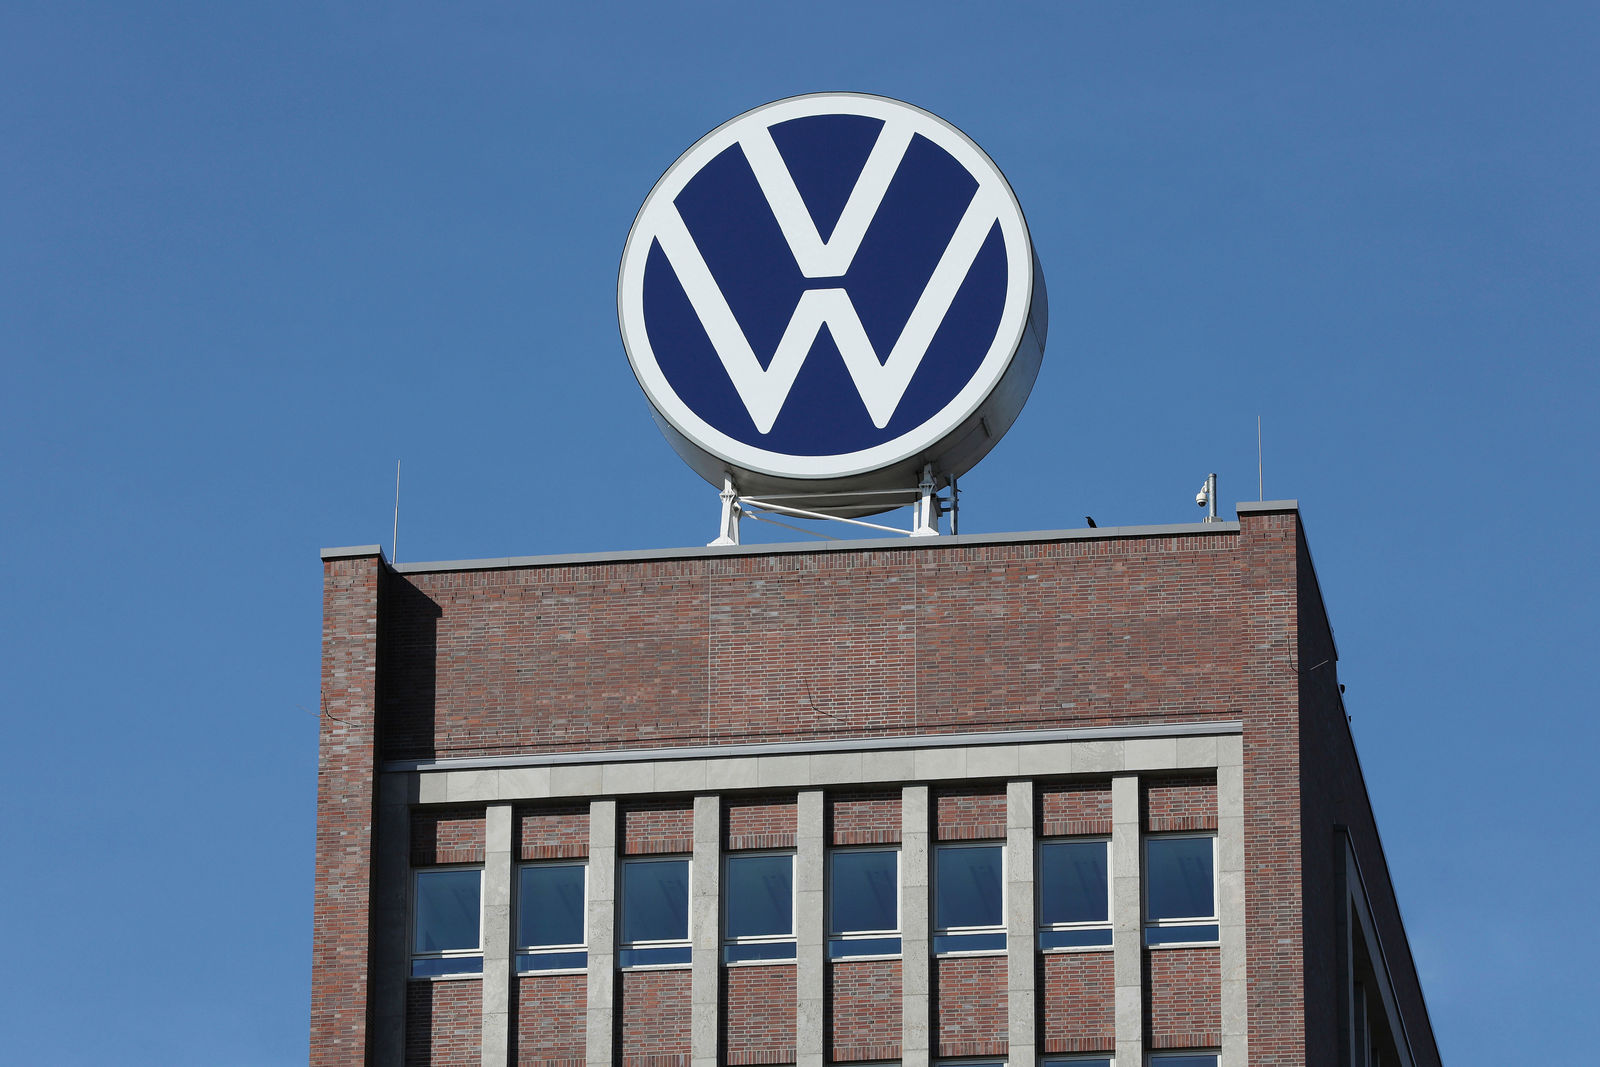 Markenhochaus (Brand Tower) - new Volkswagen logo